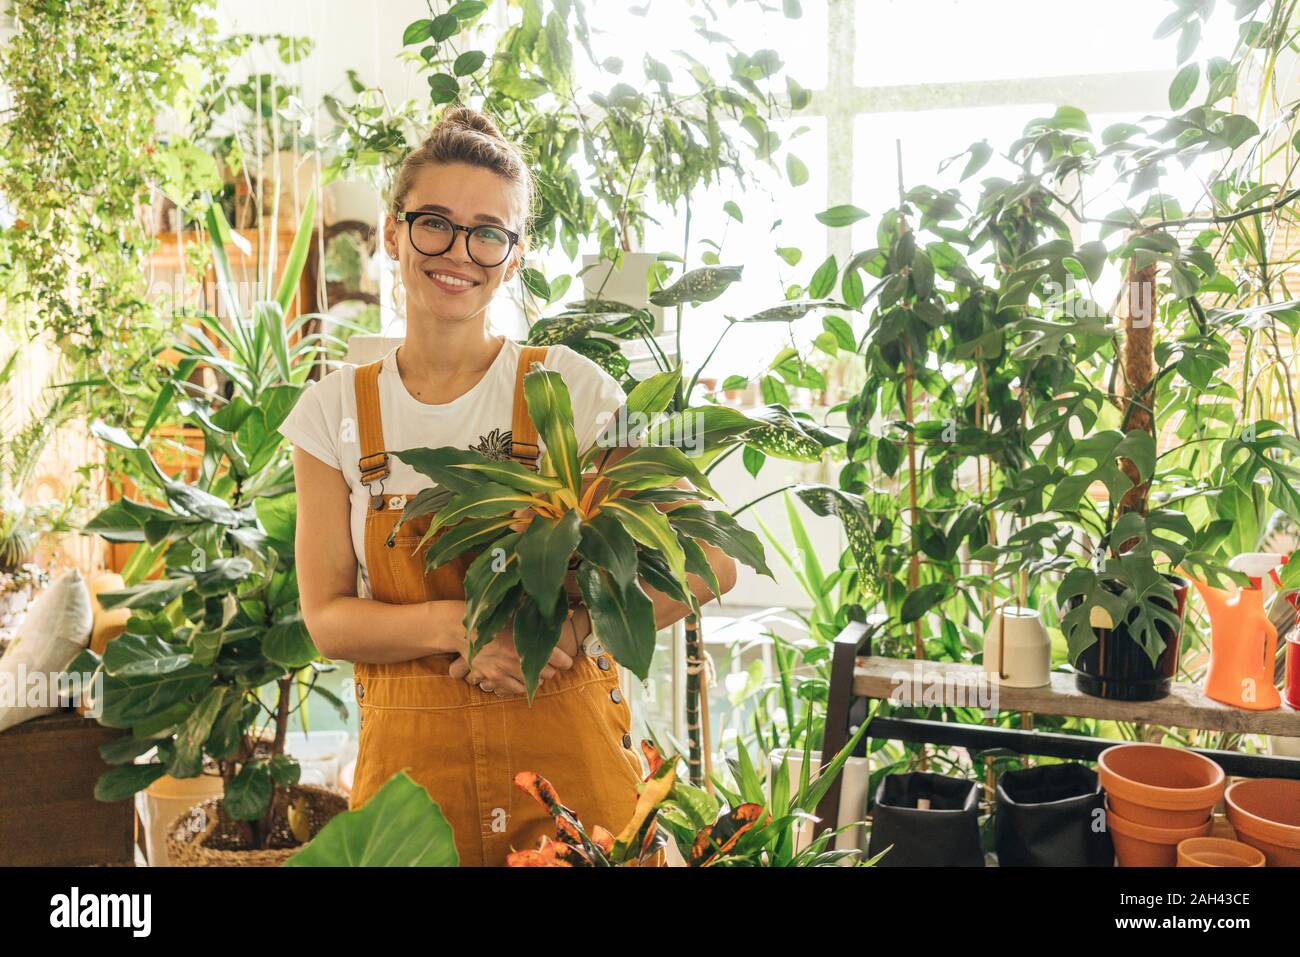 Retrato de una mujer sonriente sosteniendo una planta en una pequeña tienda de jardinería Foto de stock